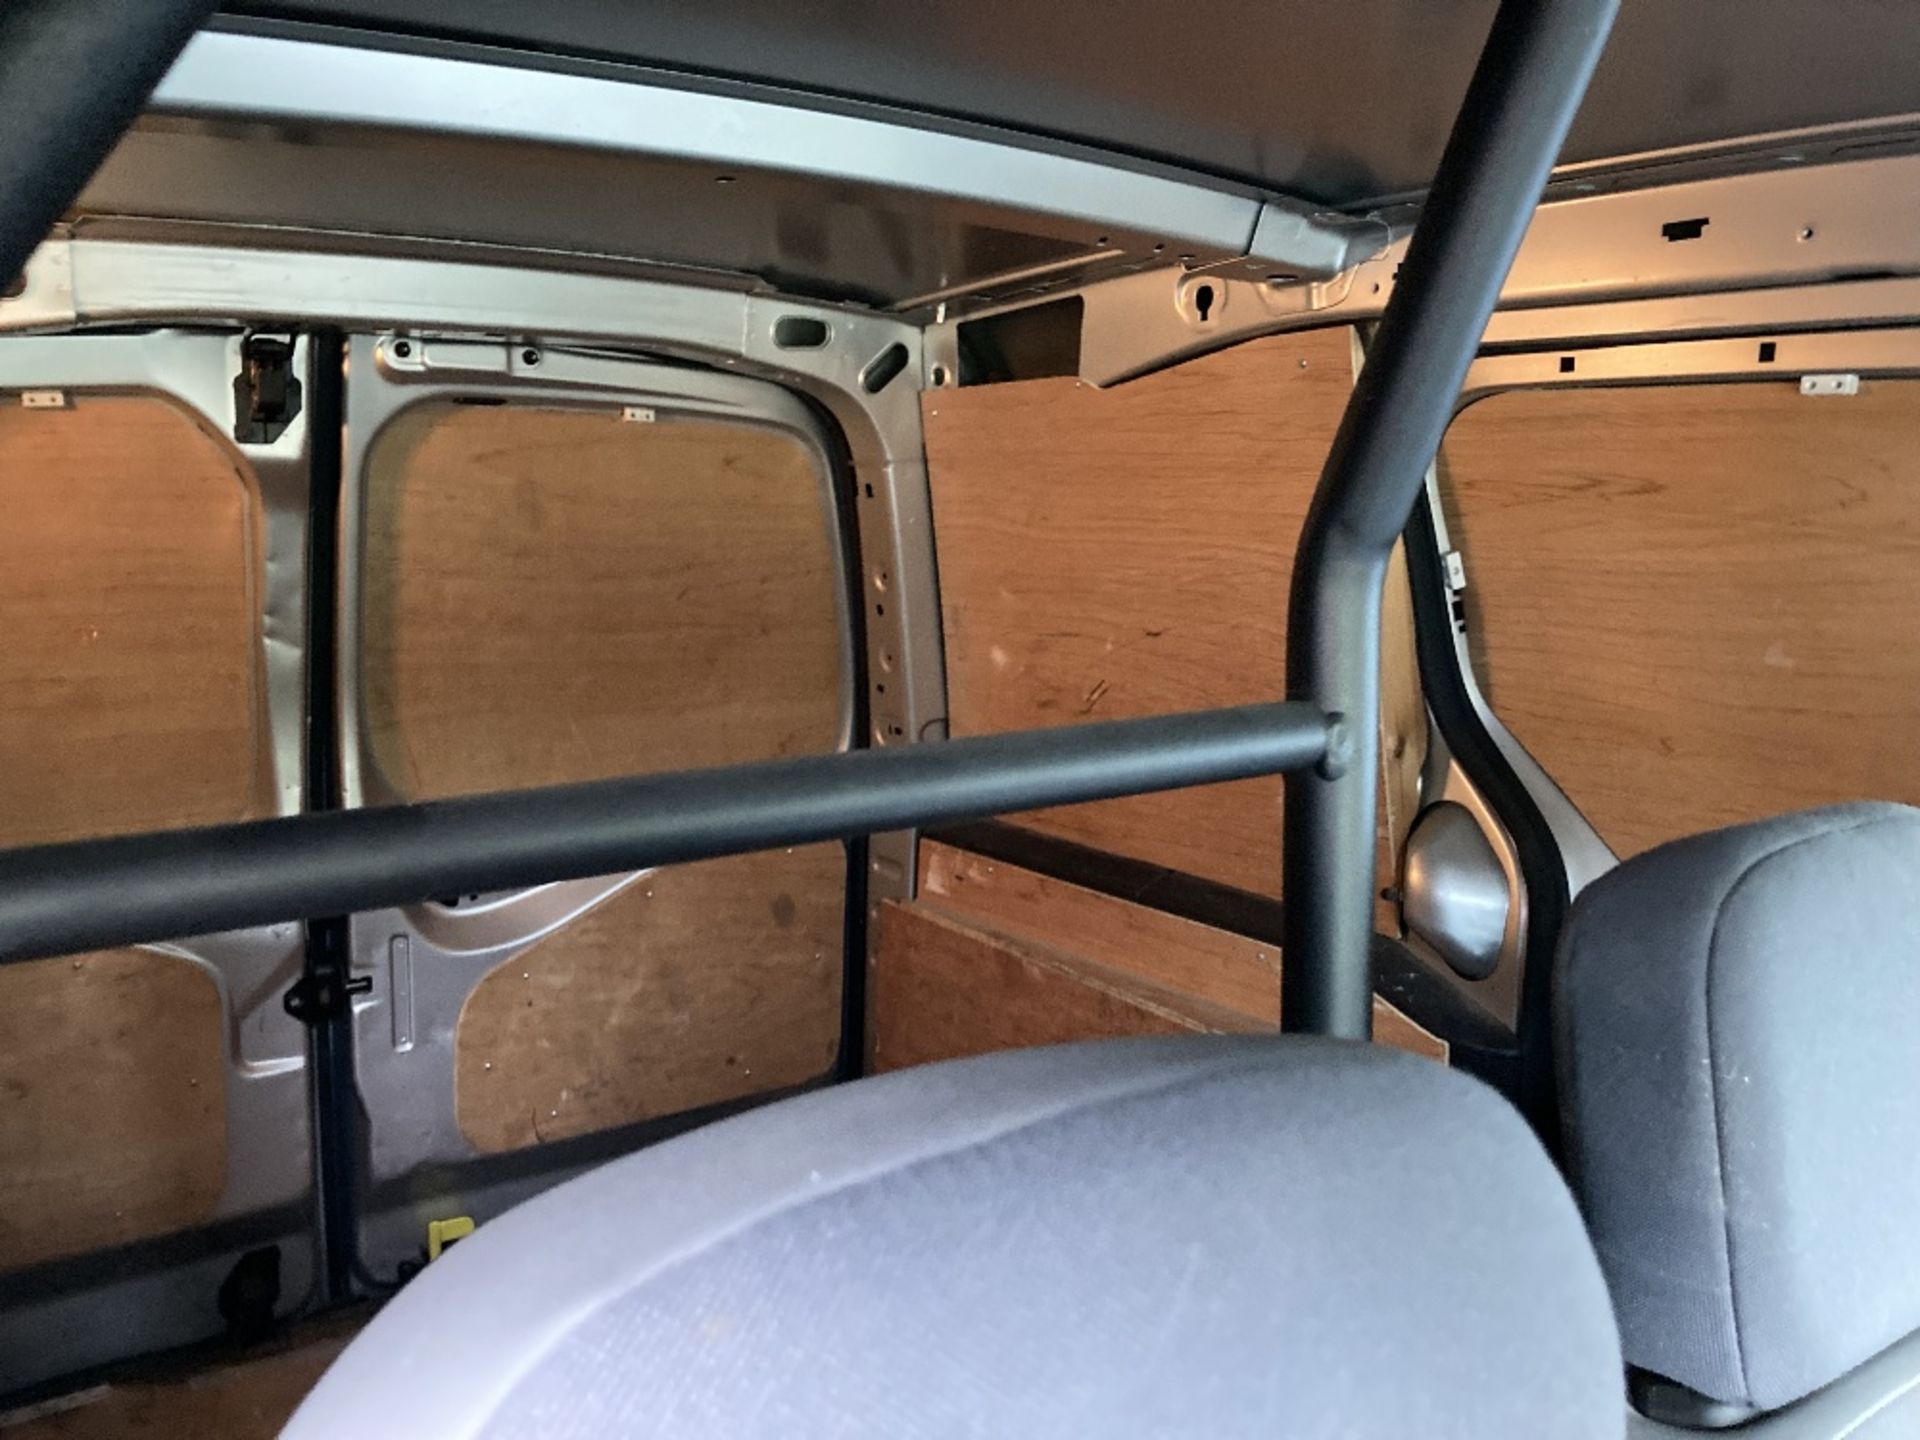 Citroen Berlingo Diesel 625 Compact Van With Rhino Roof rack - Image 22 of 23